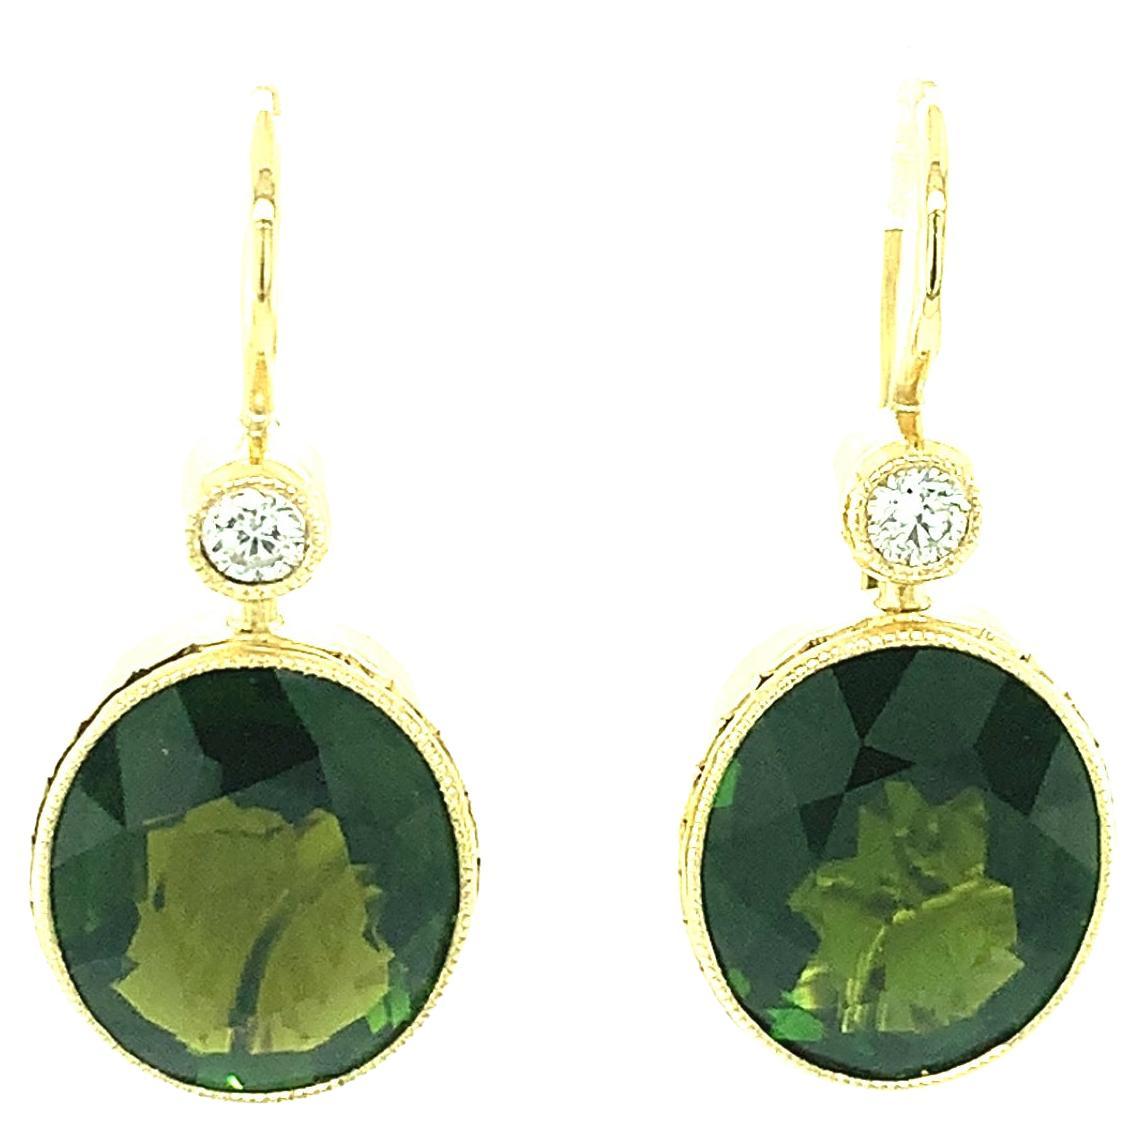 Boucles d'oreilles pendantes en or 18k avec tourmaline verte et diamant d'une valeur totale de 10,12 carats